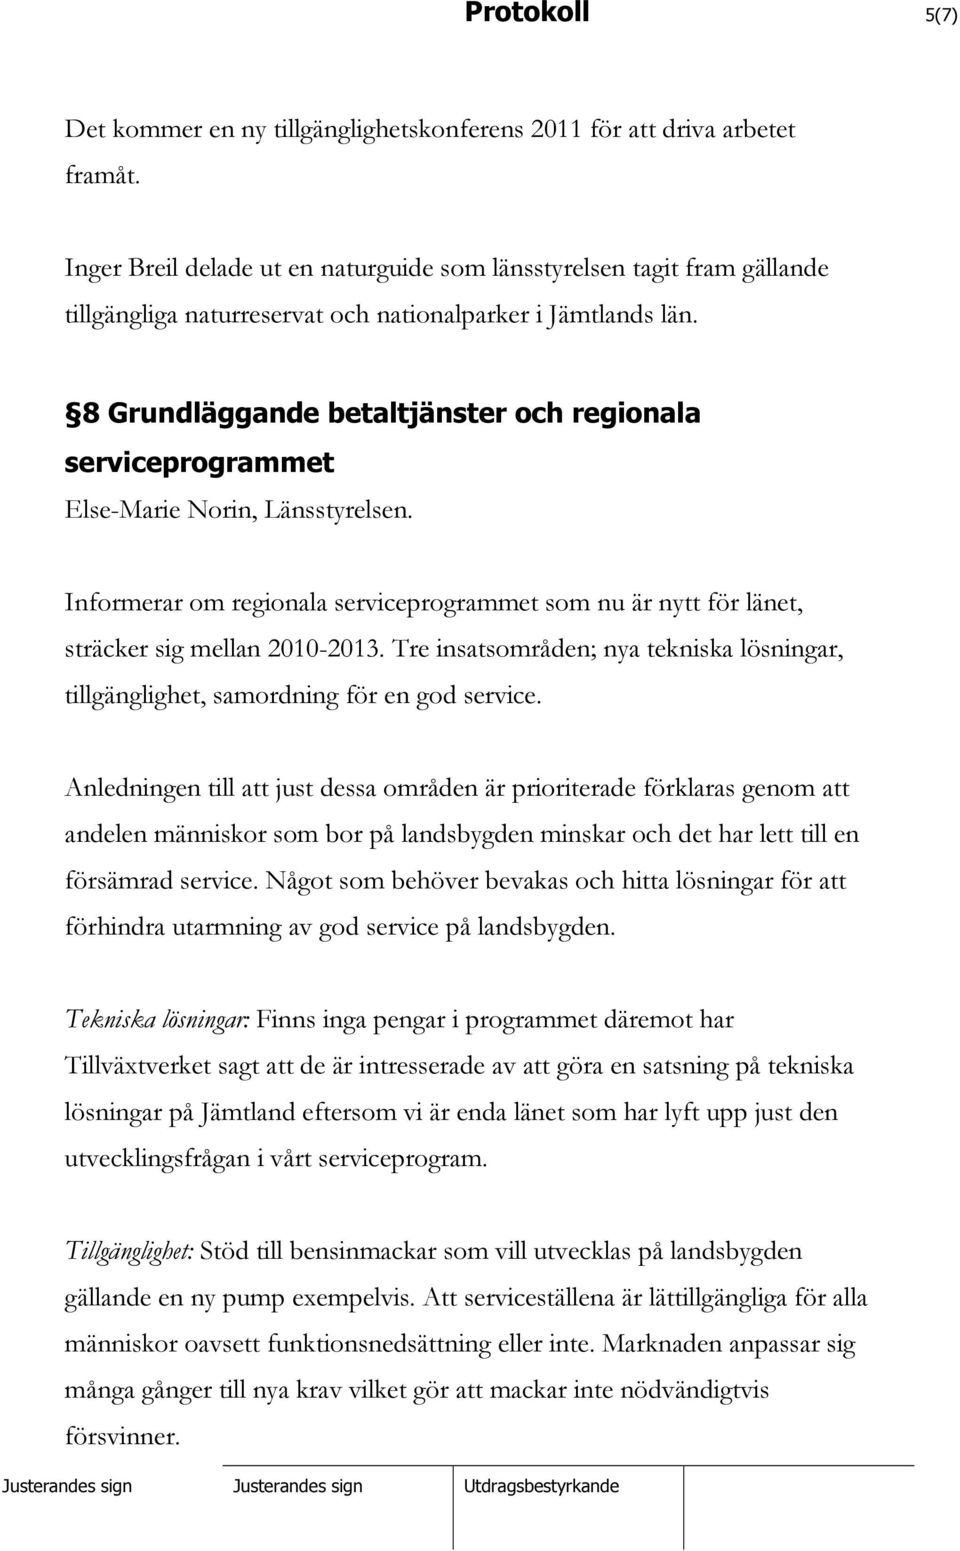 8 Grundläggande betaltjänster och regionala serviceprogrammet Else-Marie Norin, Länsstyrelsen. Informerar om regionala serviceprogrammet som nu är nytt för länet, sträcker sig mellan 2010-2013.